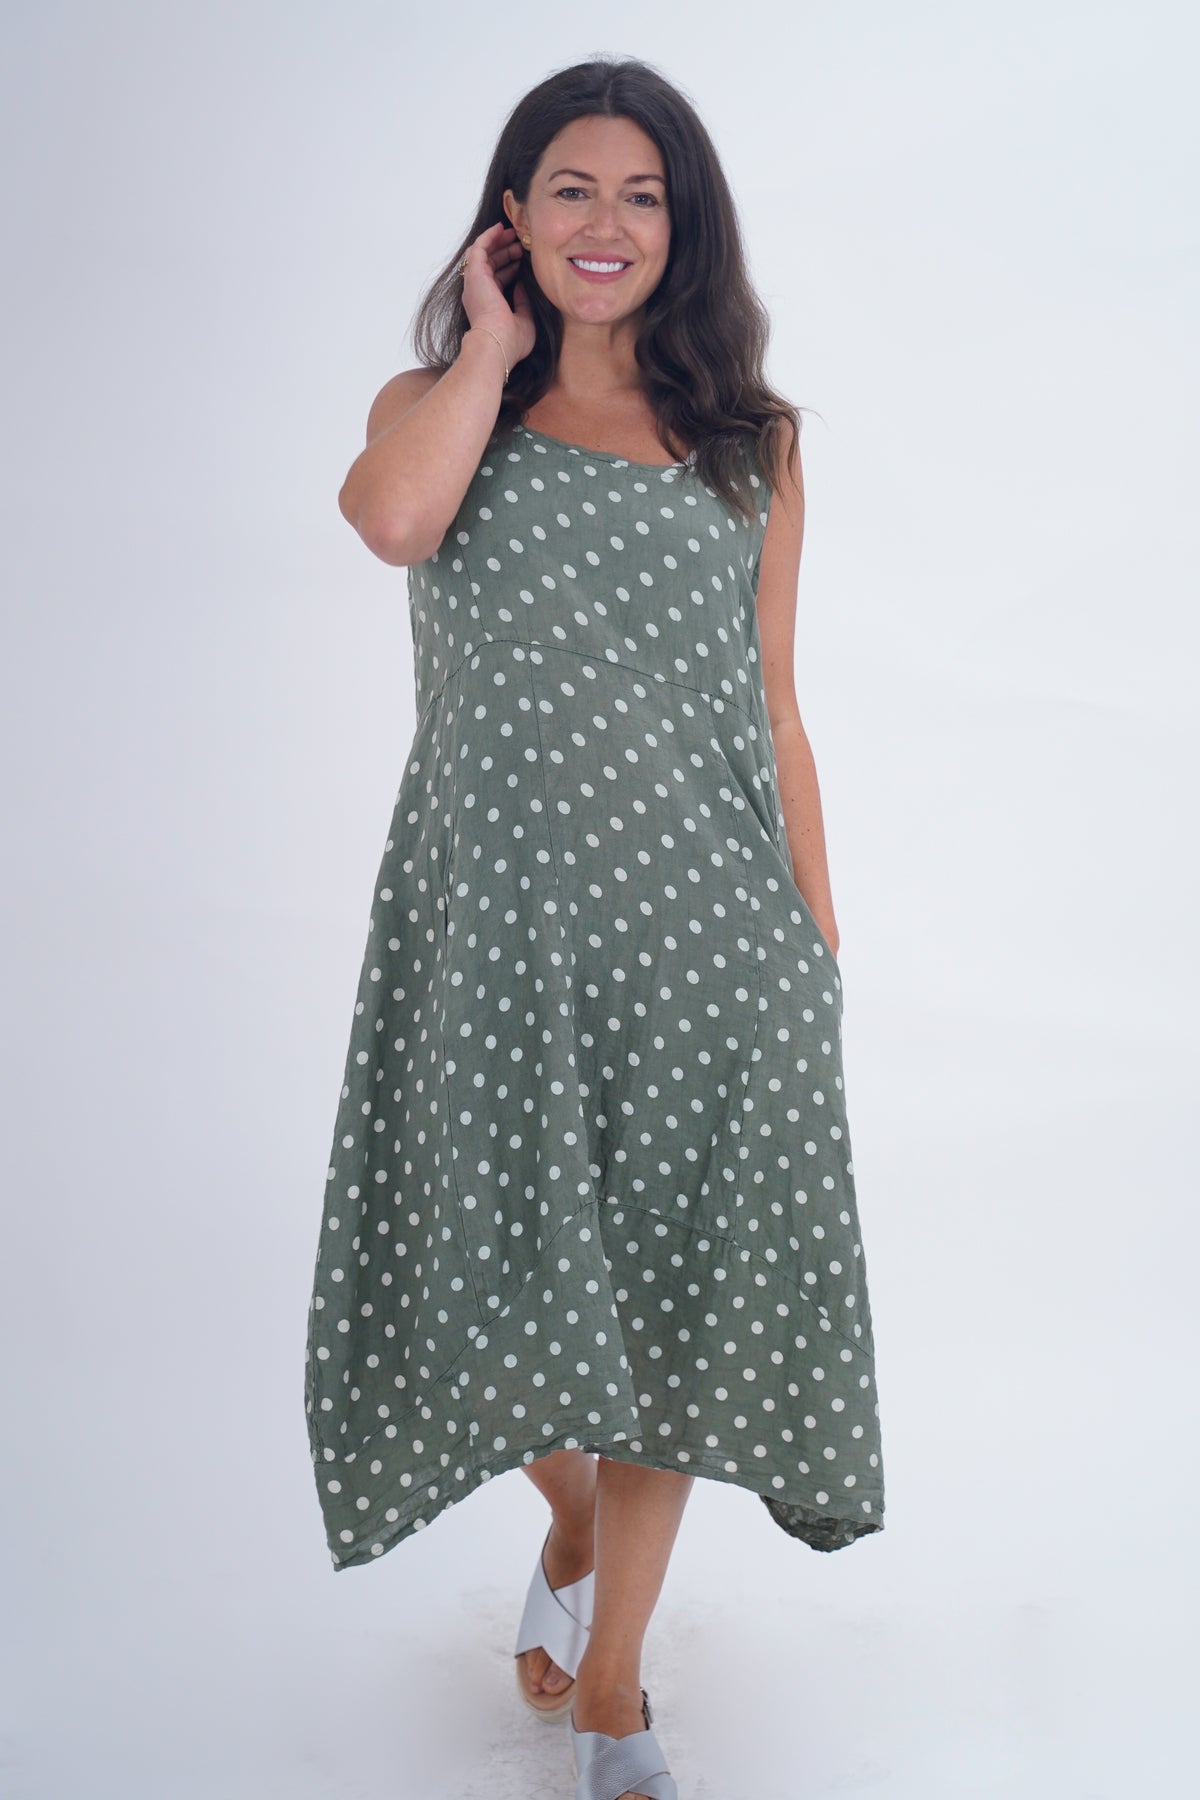 Wholesale Italian Linen Dresses - Buy Italian Linen Dresses Uk